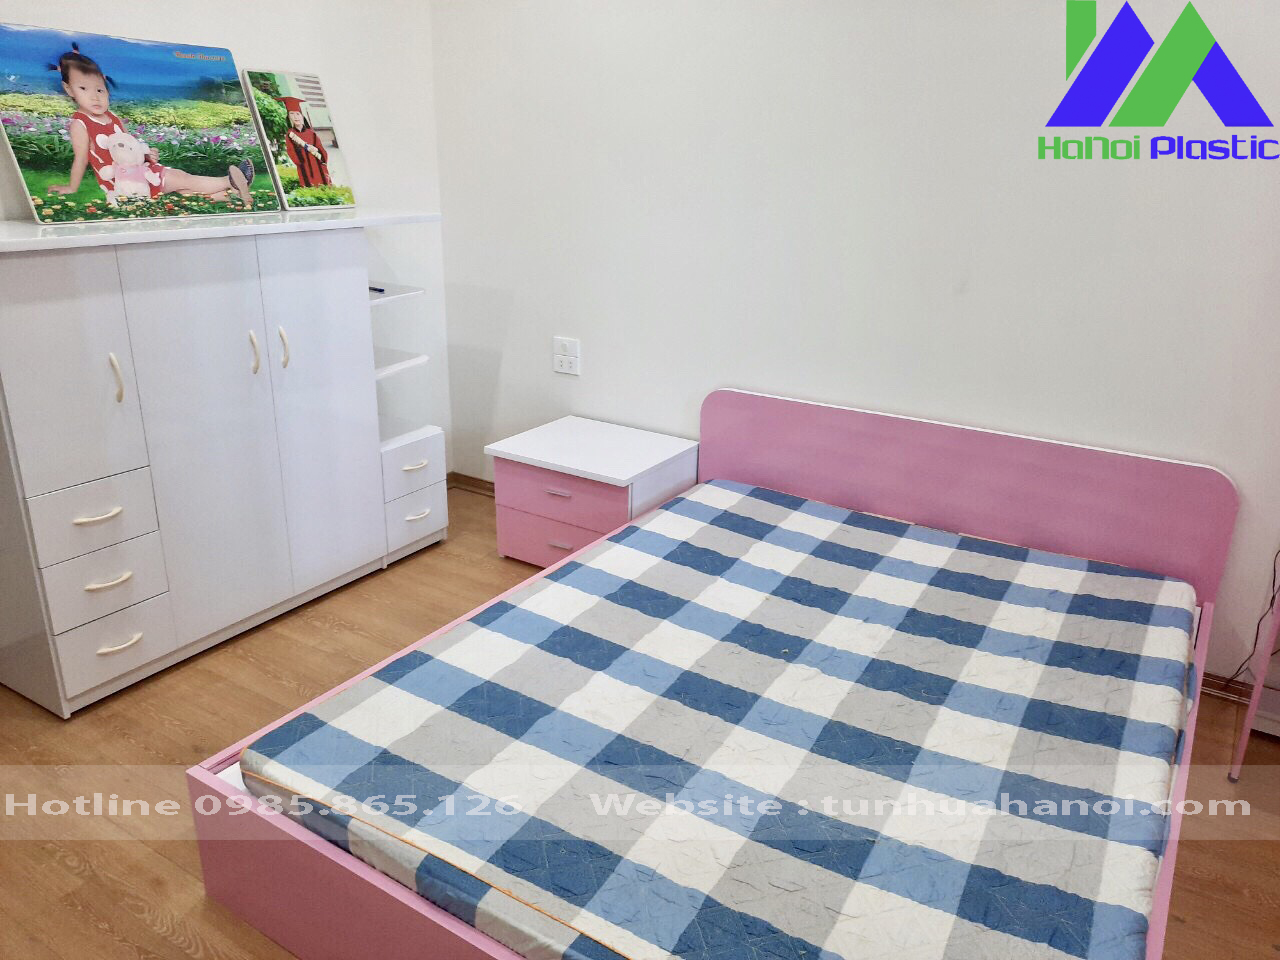 Bộ nội thất nhựa phòng ngủ cho trẻ em - Tunhuahanoi.com